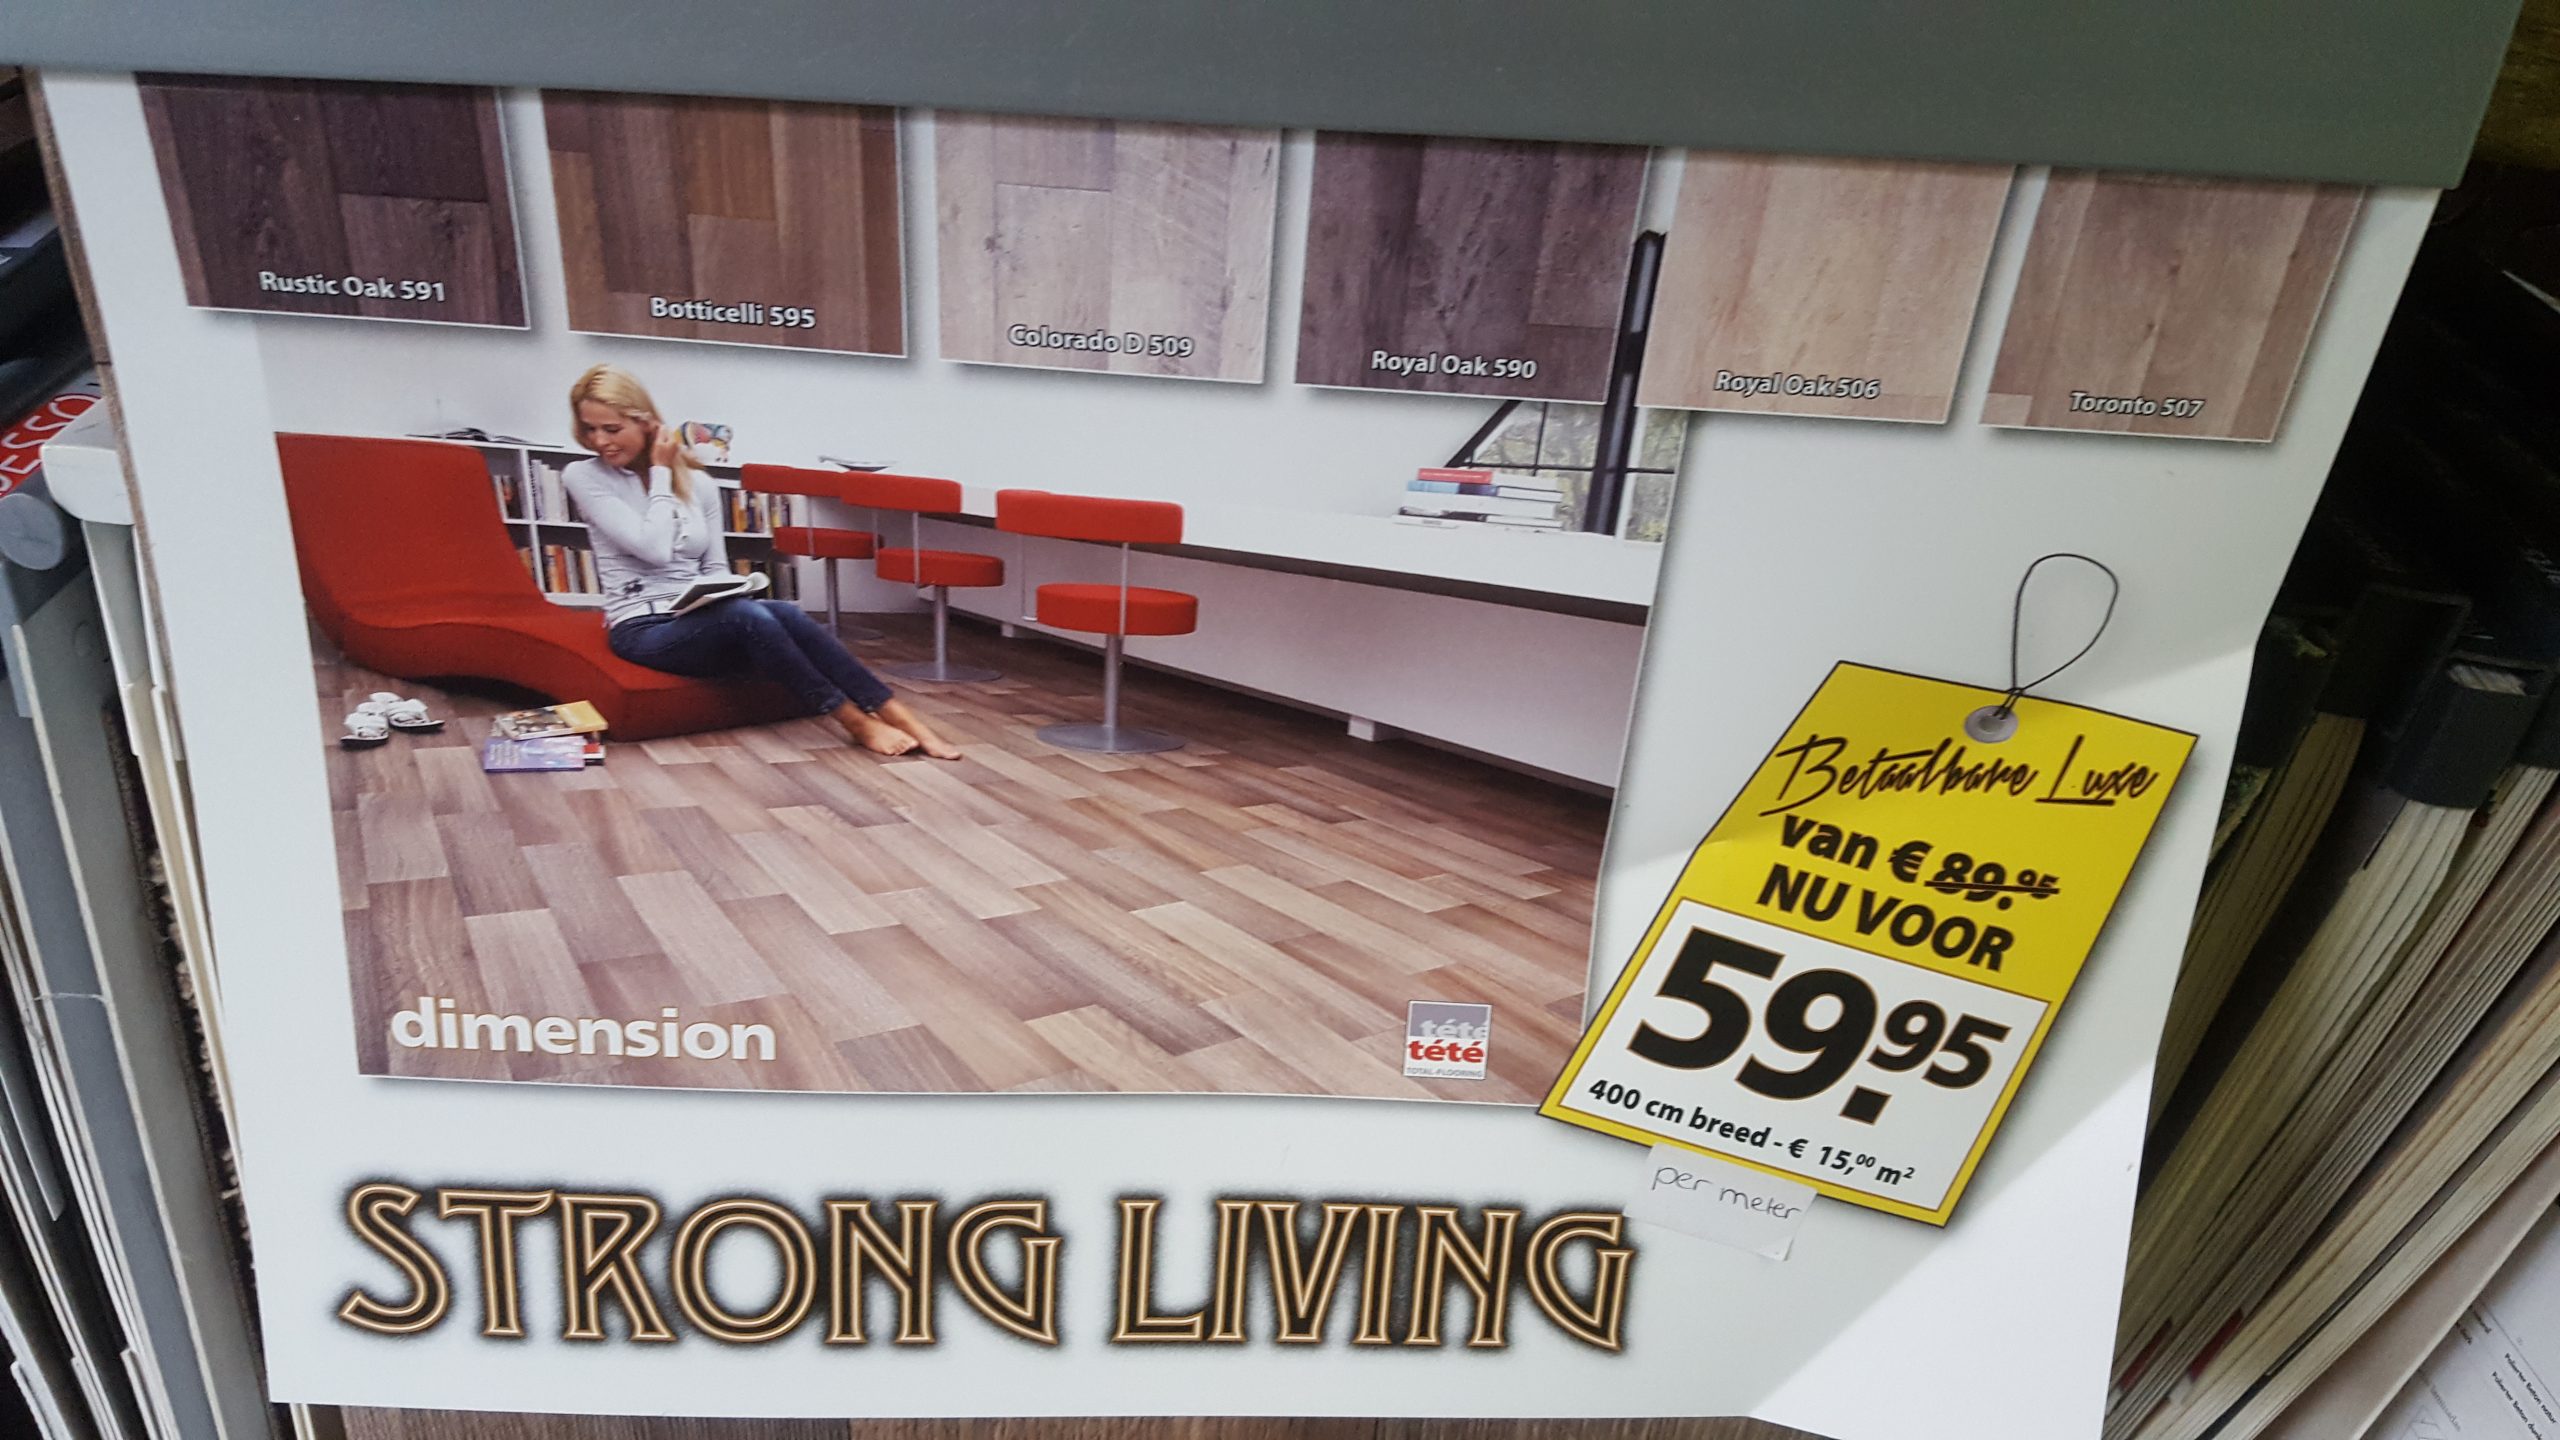 Dimension flooring, Living vinyl (op - Metamorphosis